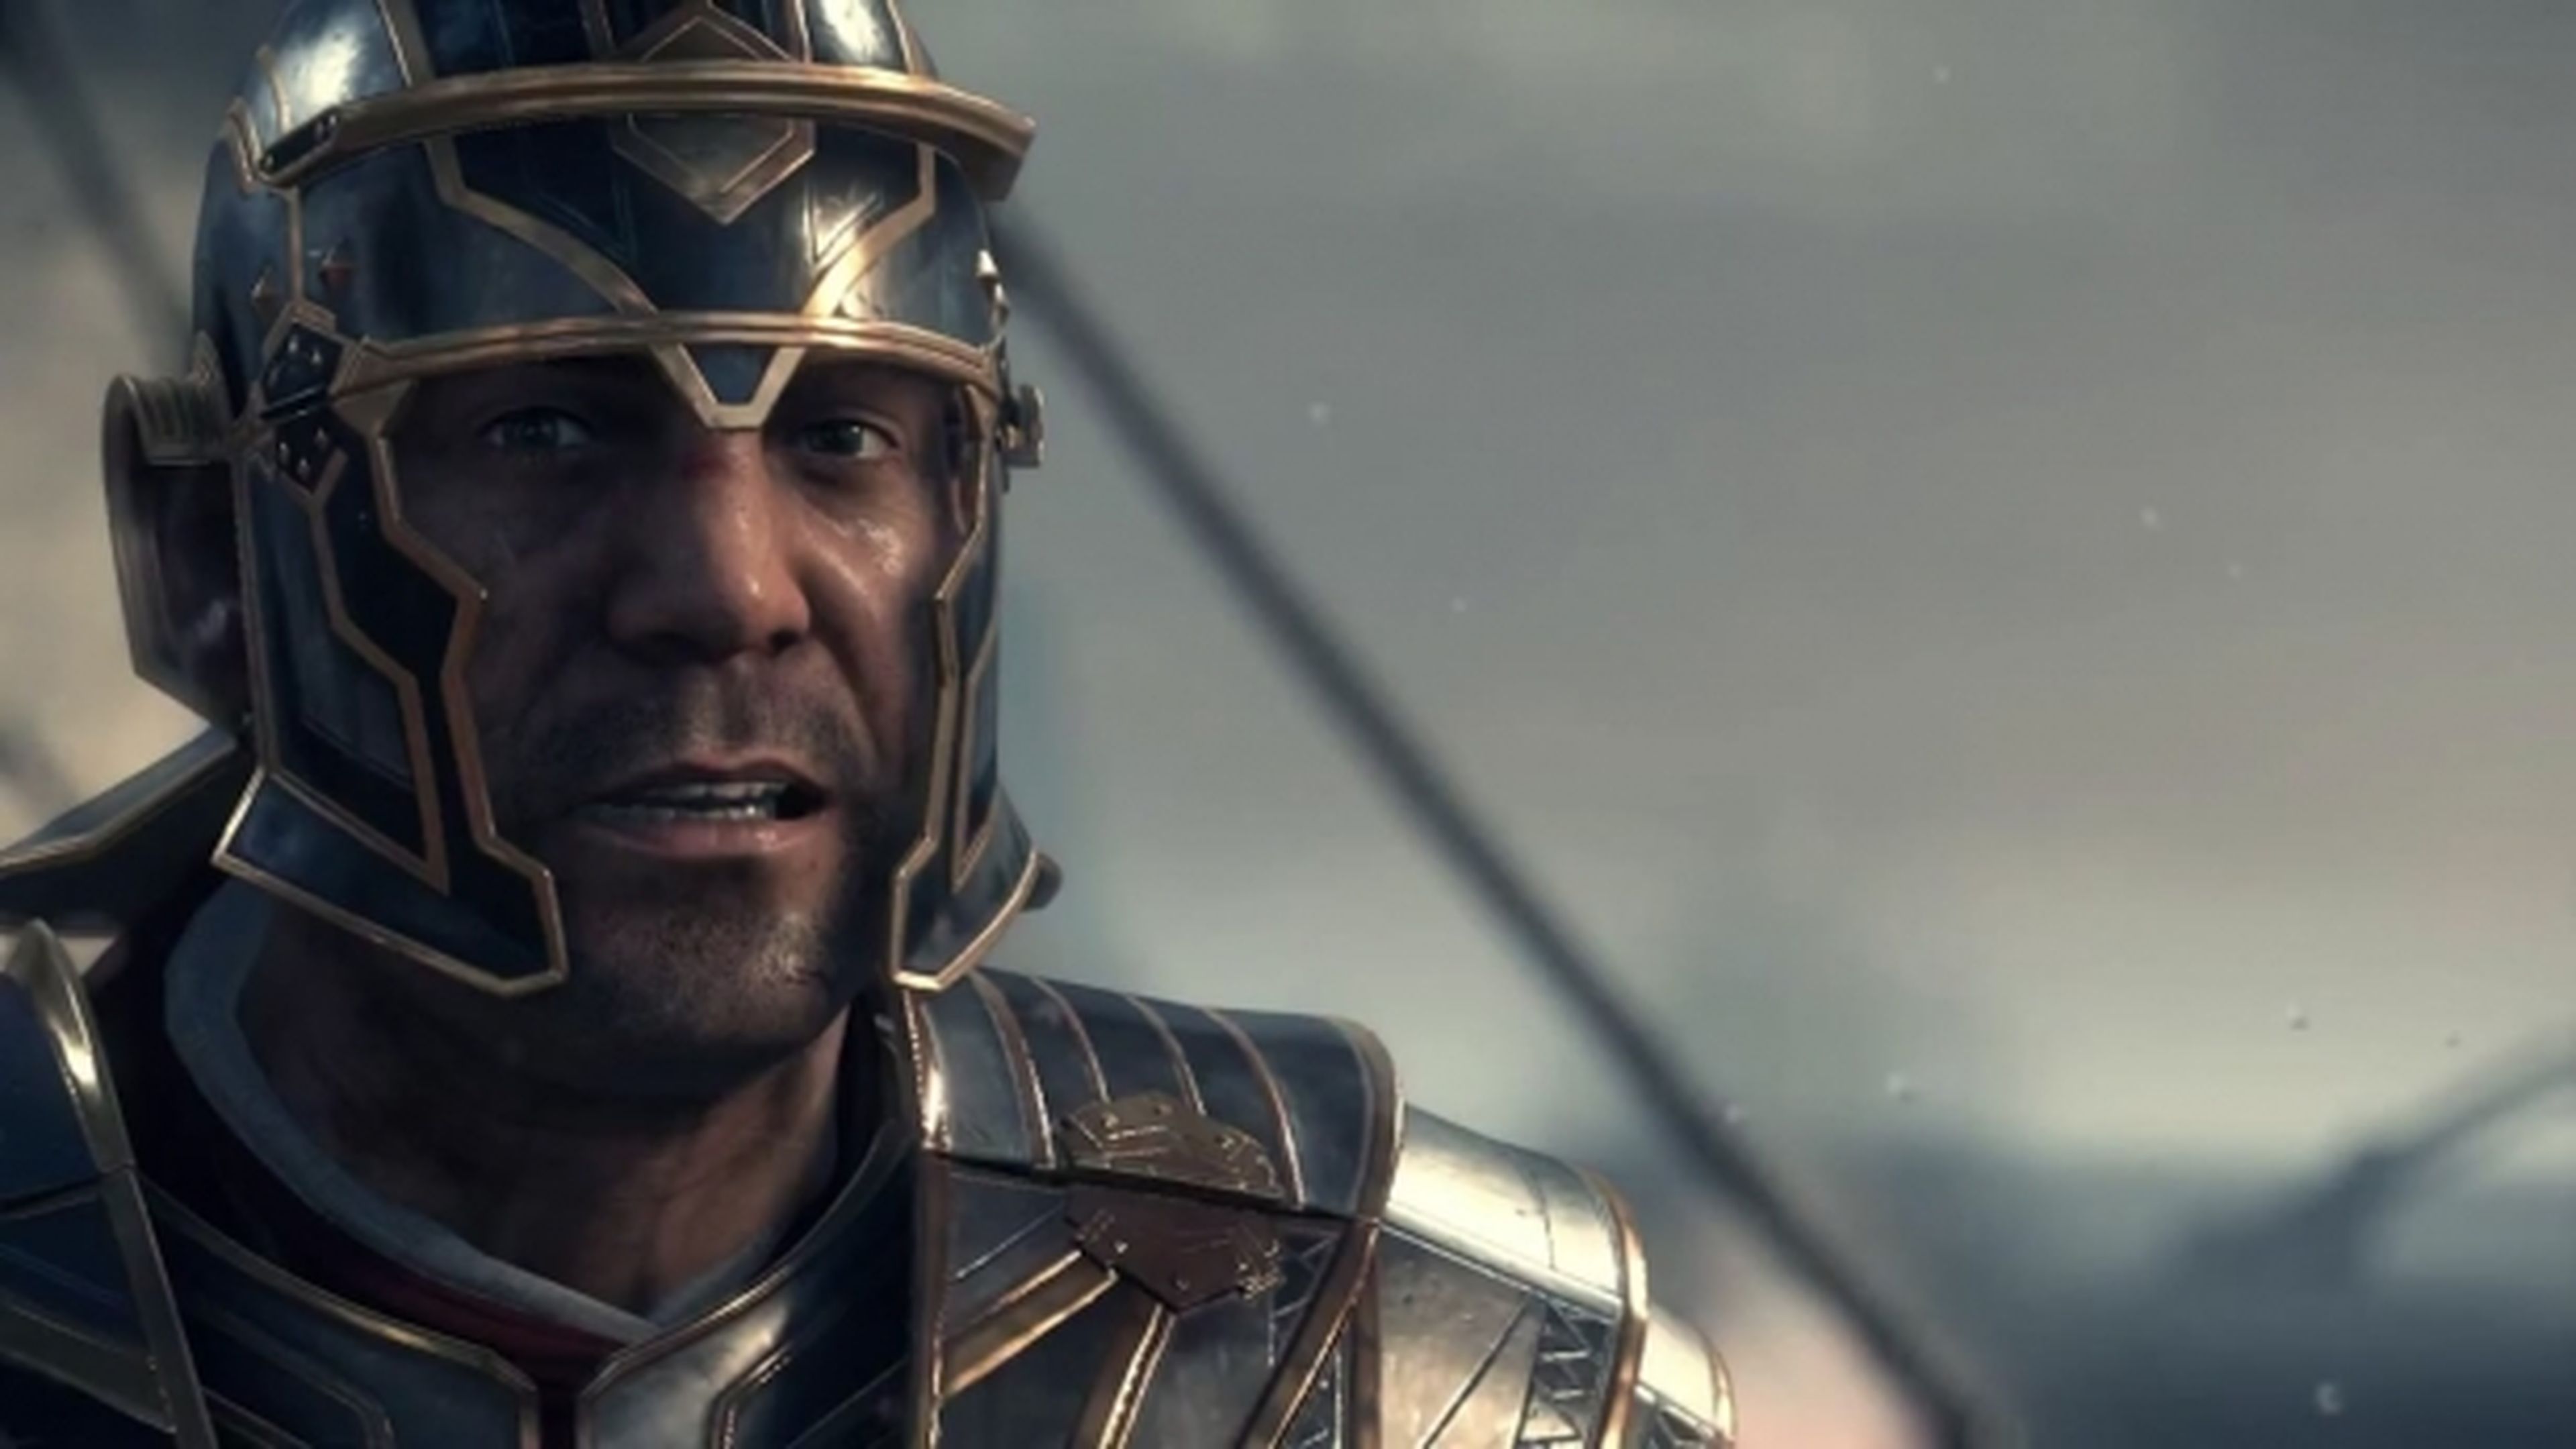 Crytek defiende la resolución 900p de Ryse Son of Rome